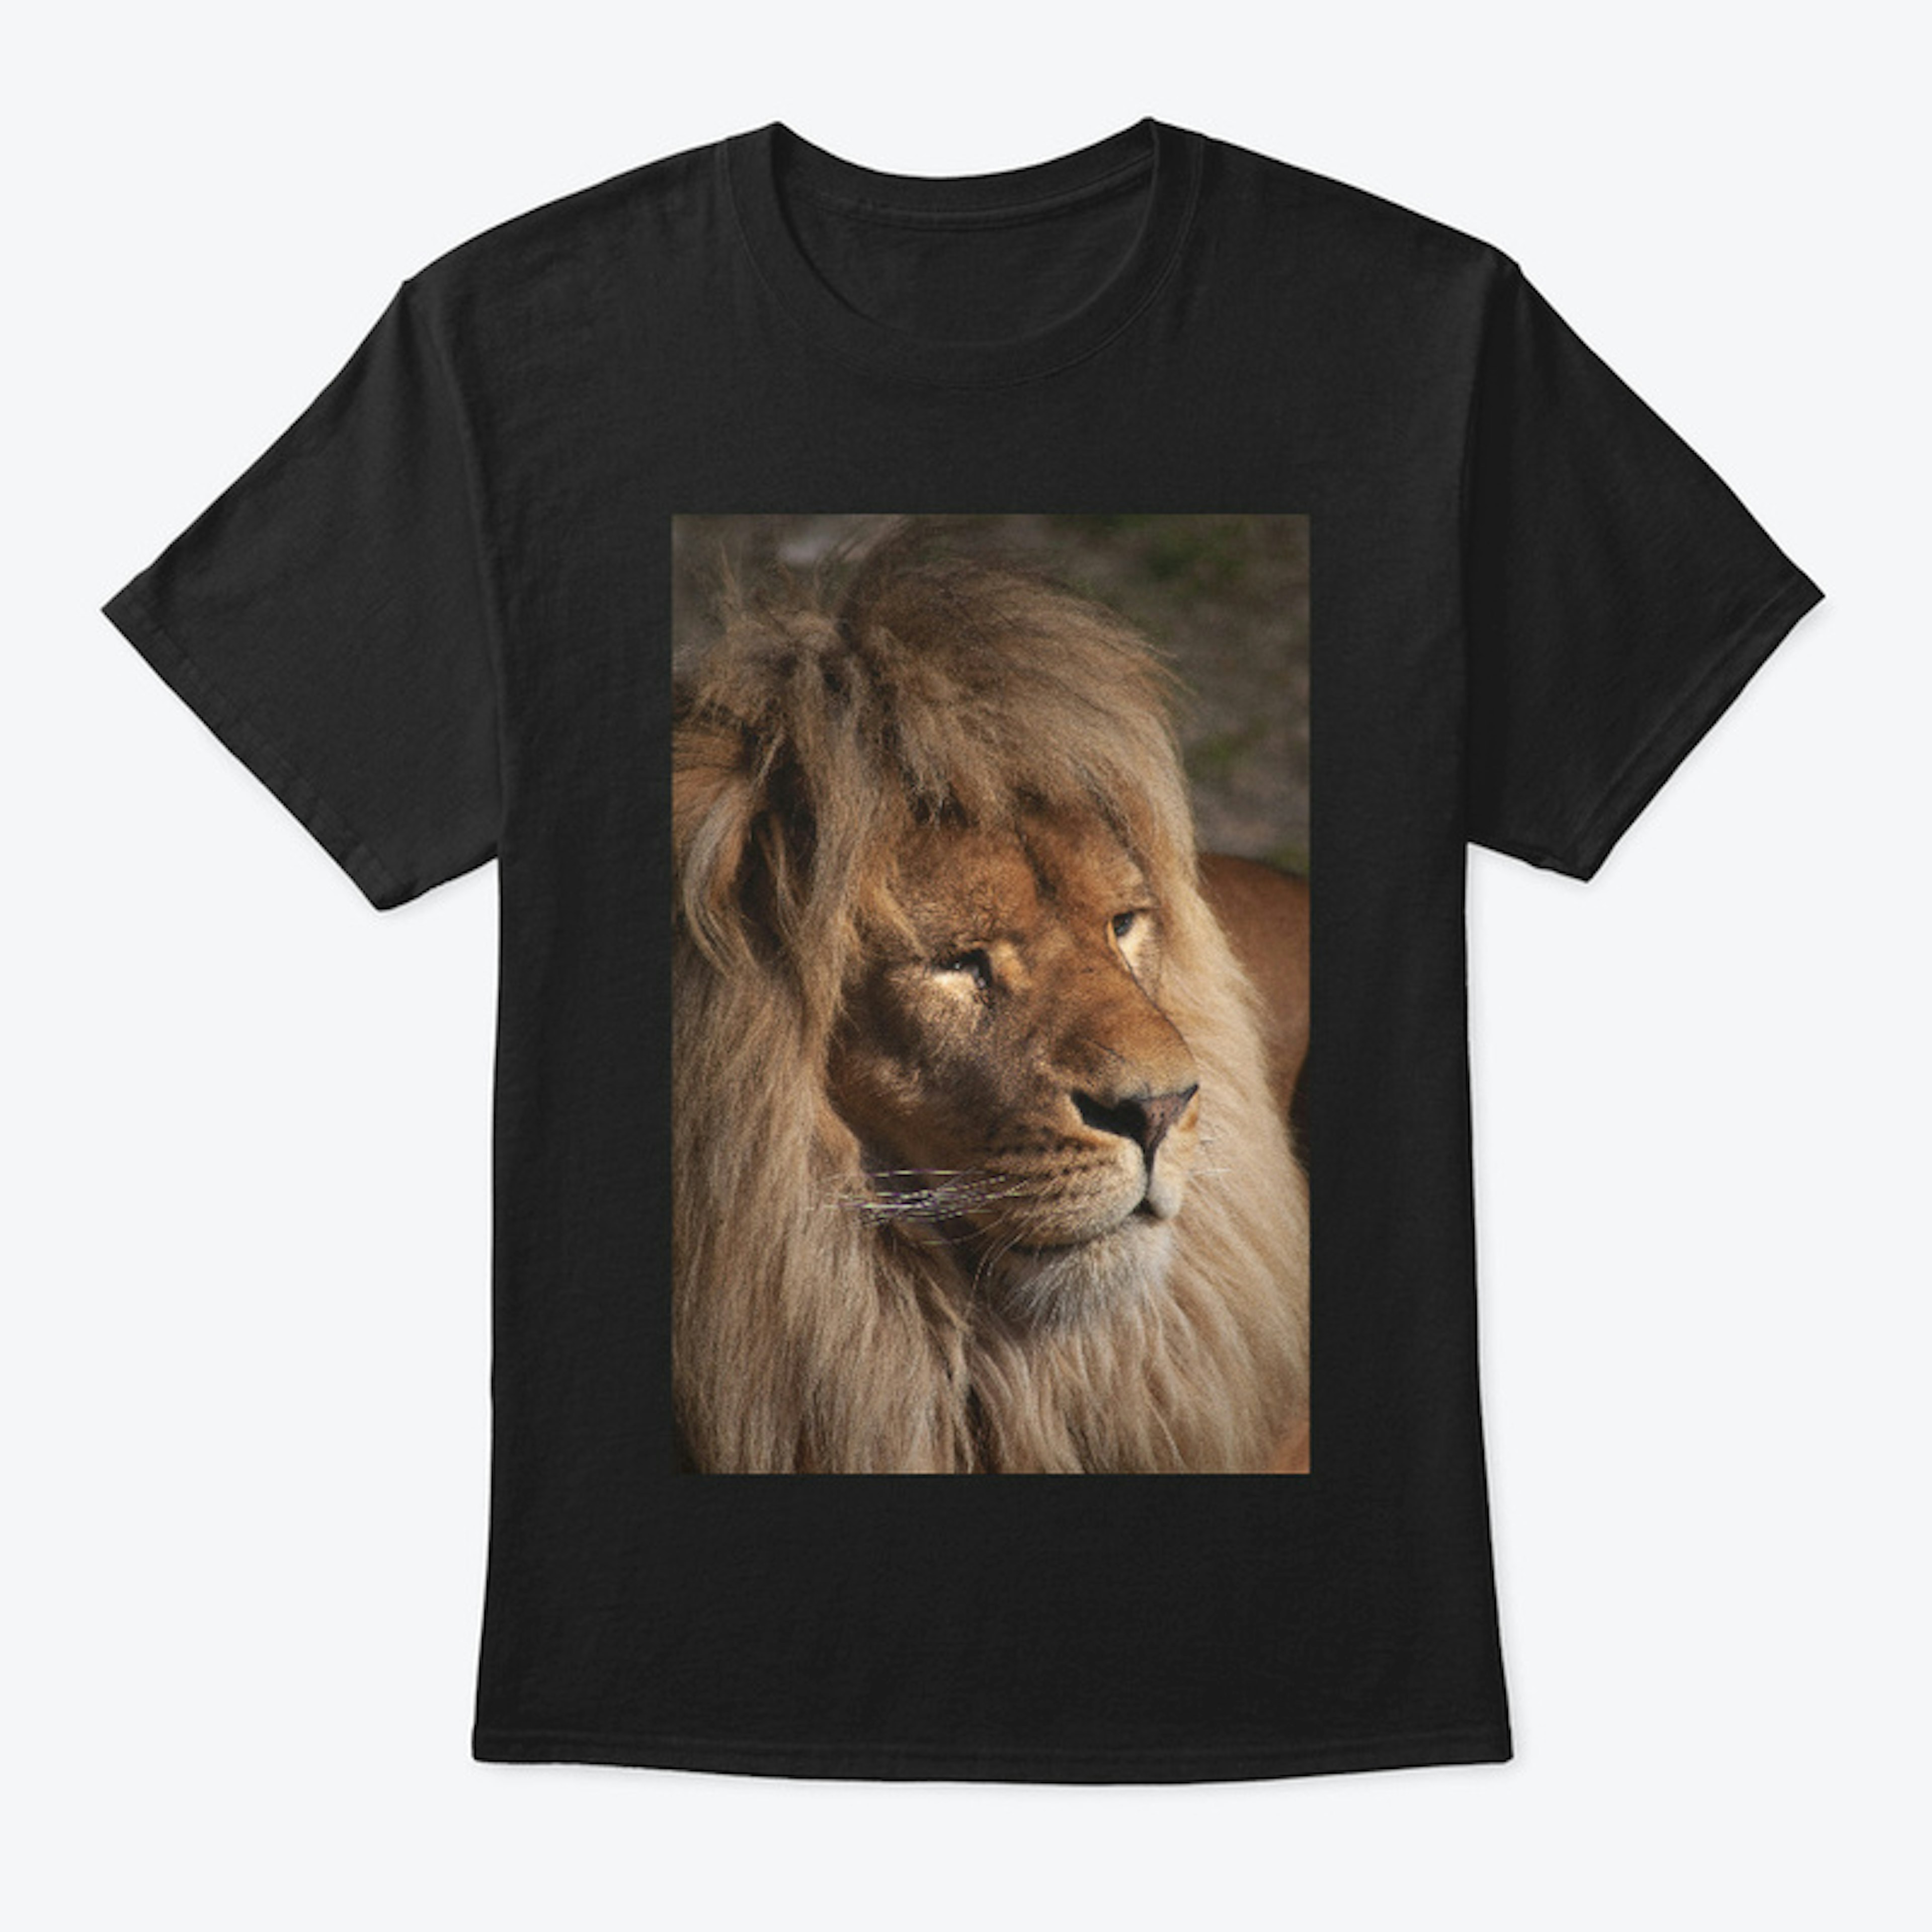 I Love Lions 